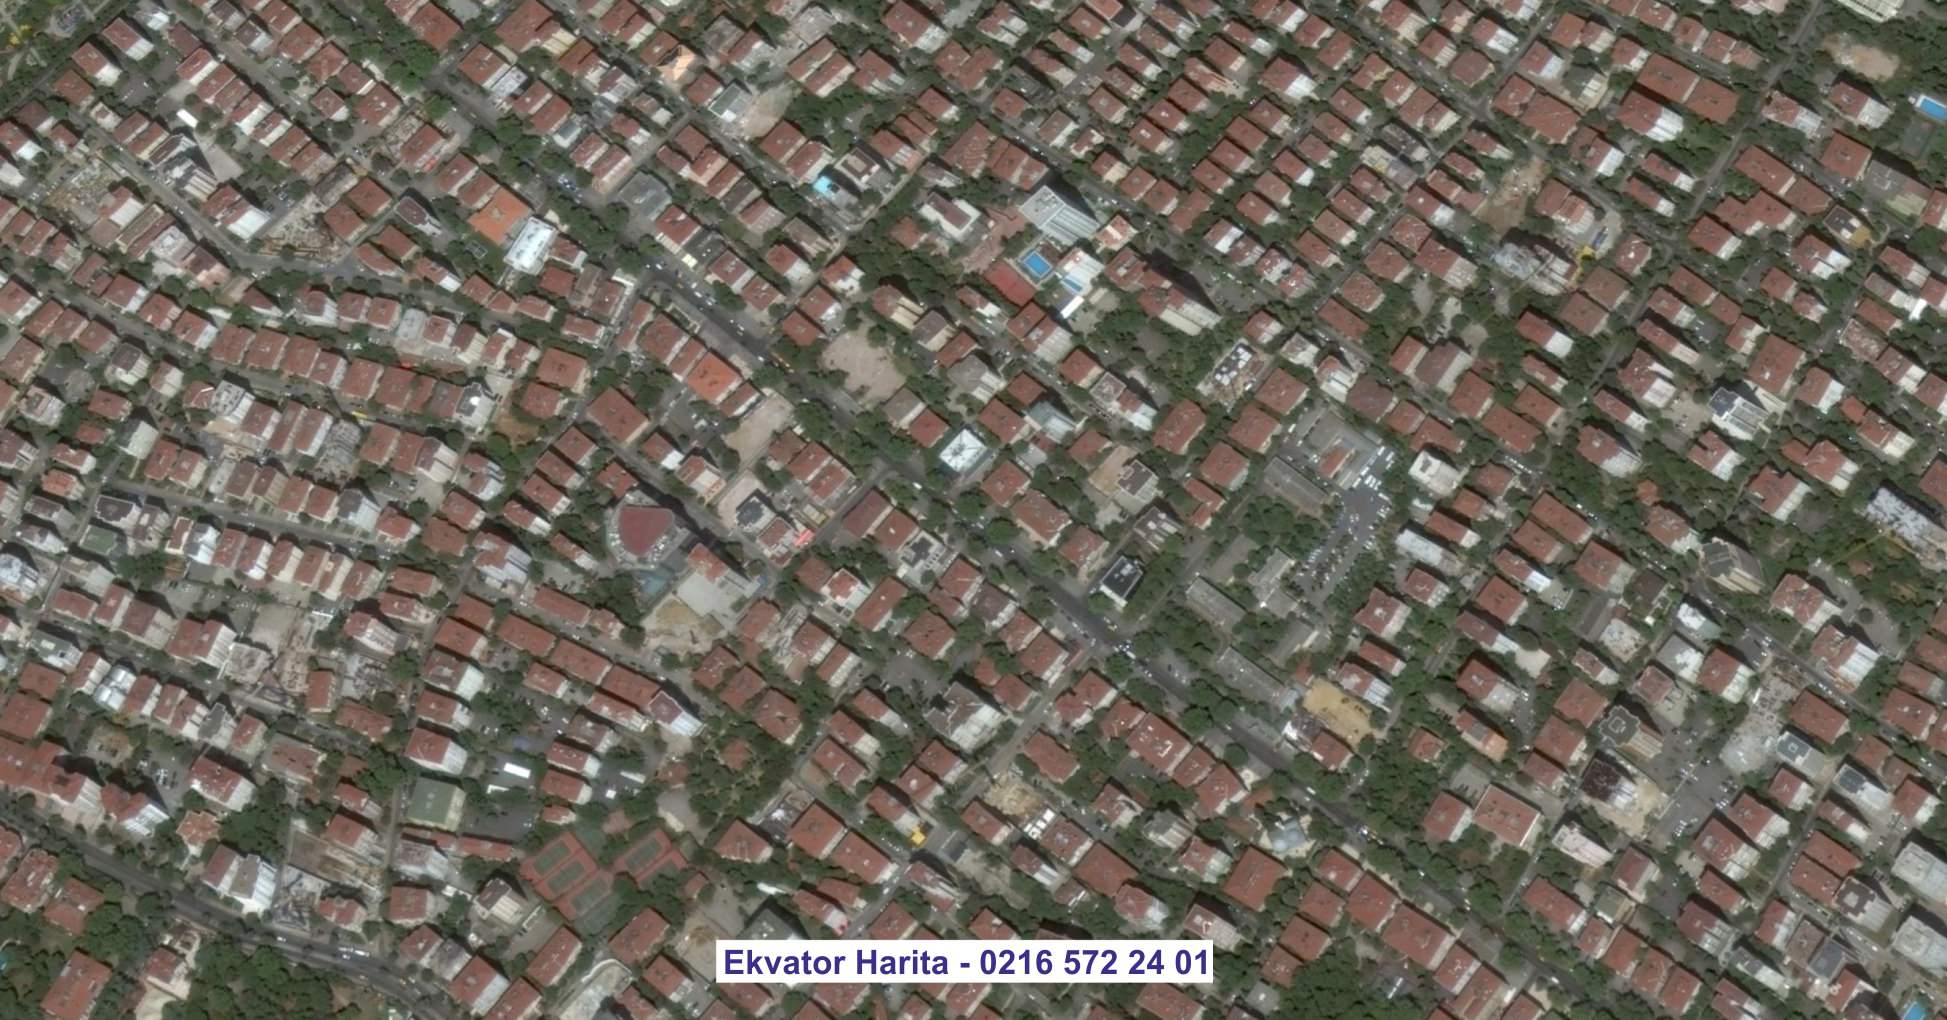 Tokat Uydu Görüntüsü Örnek Fotoğrafı